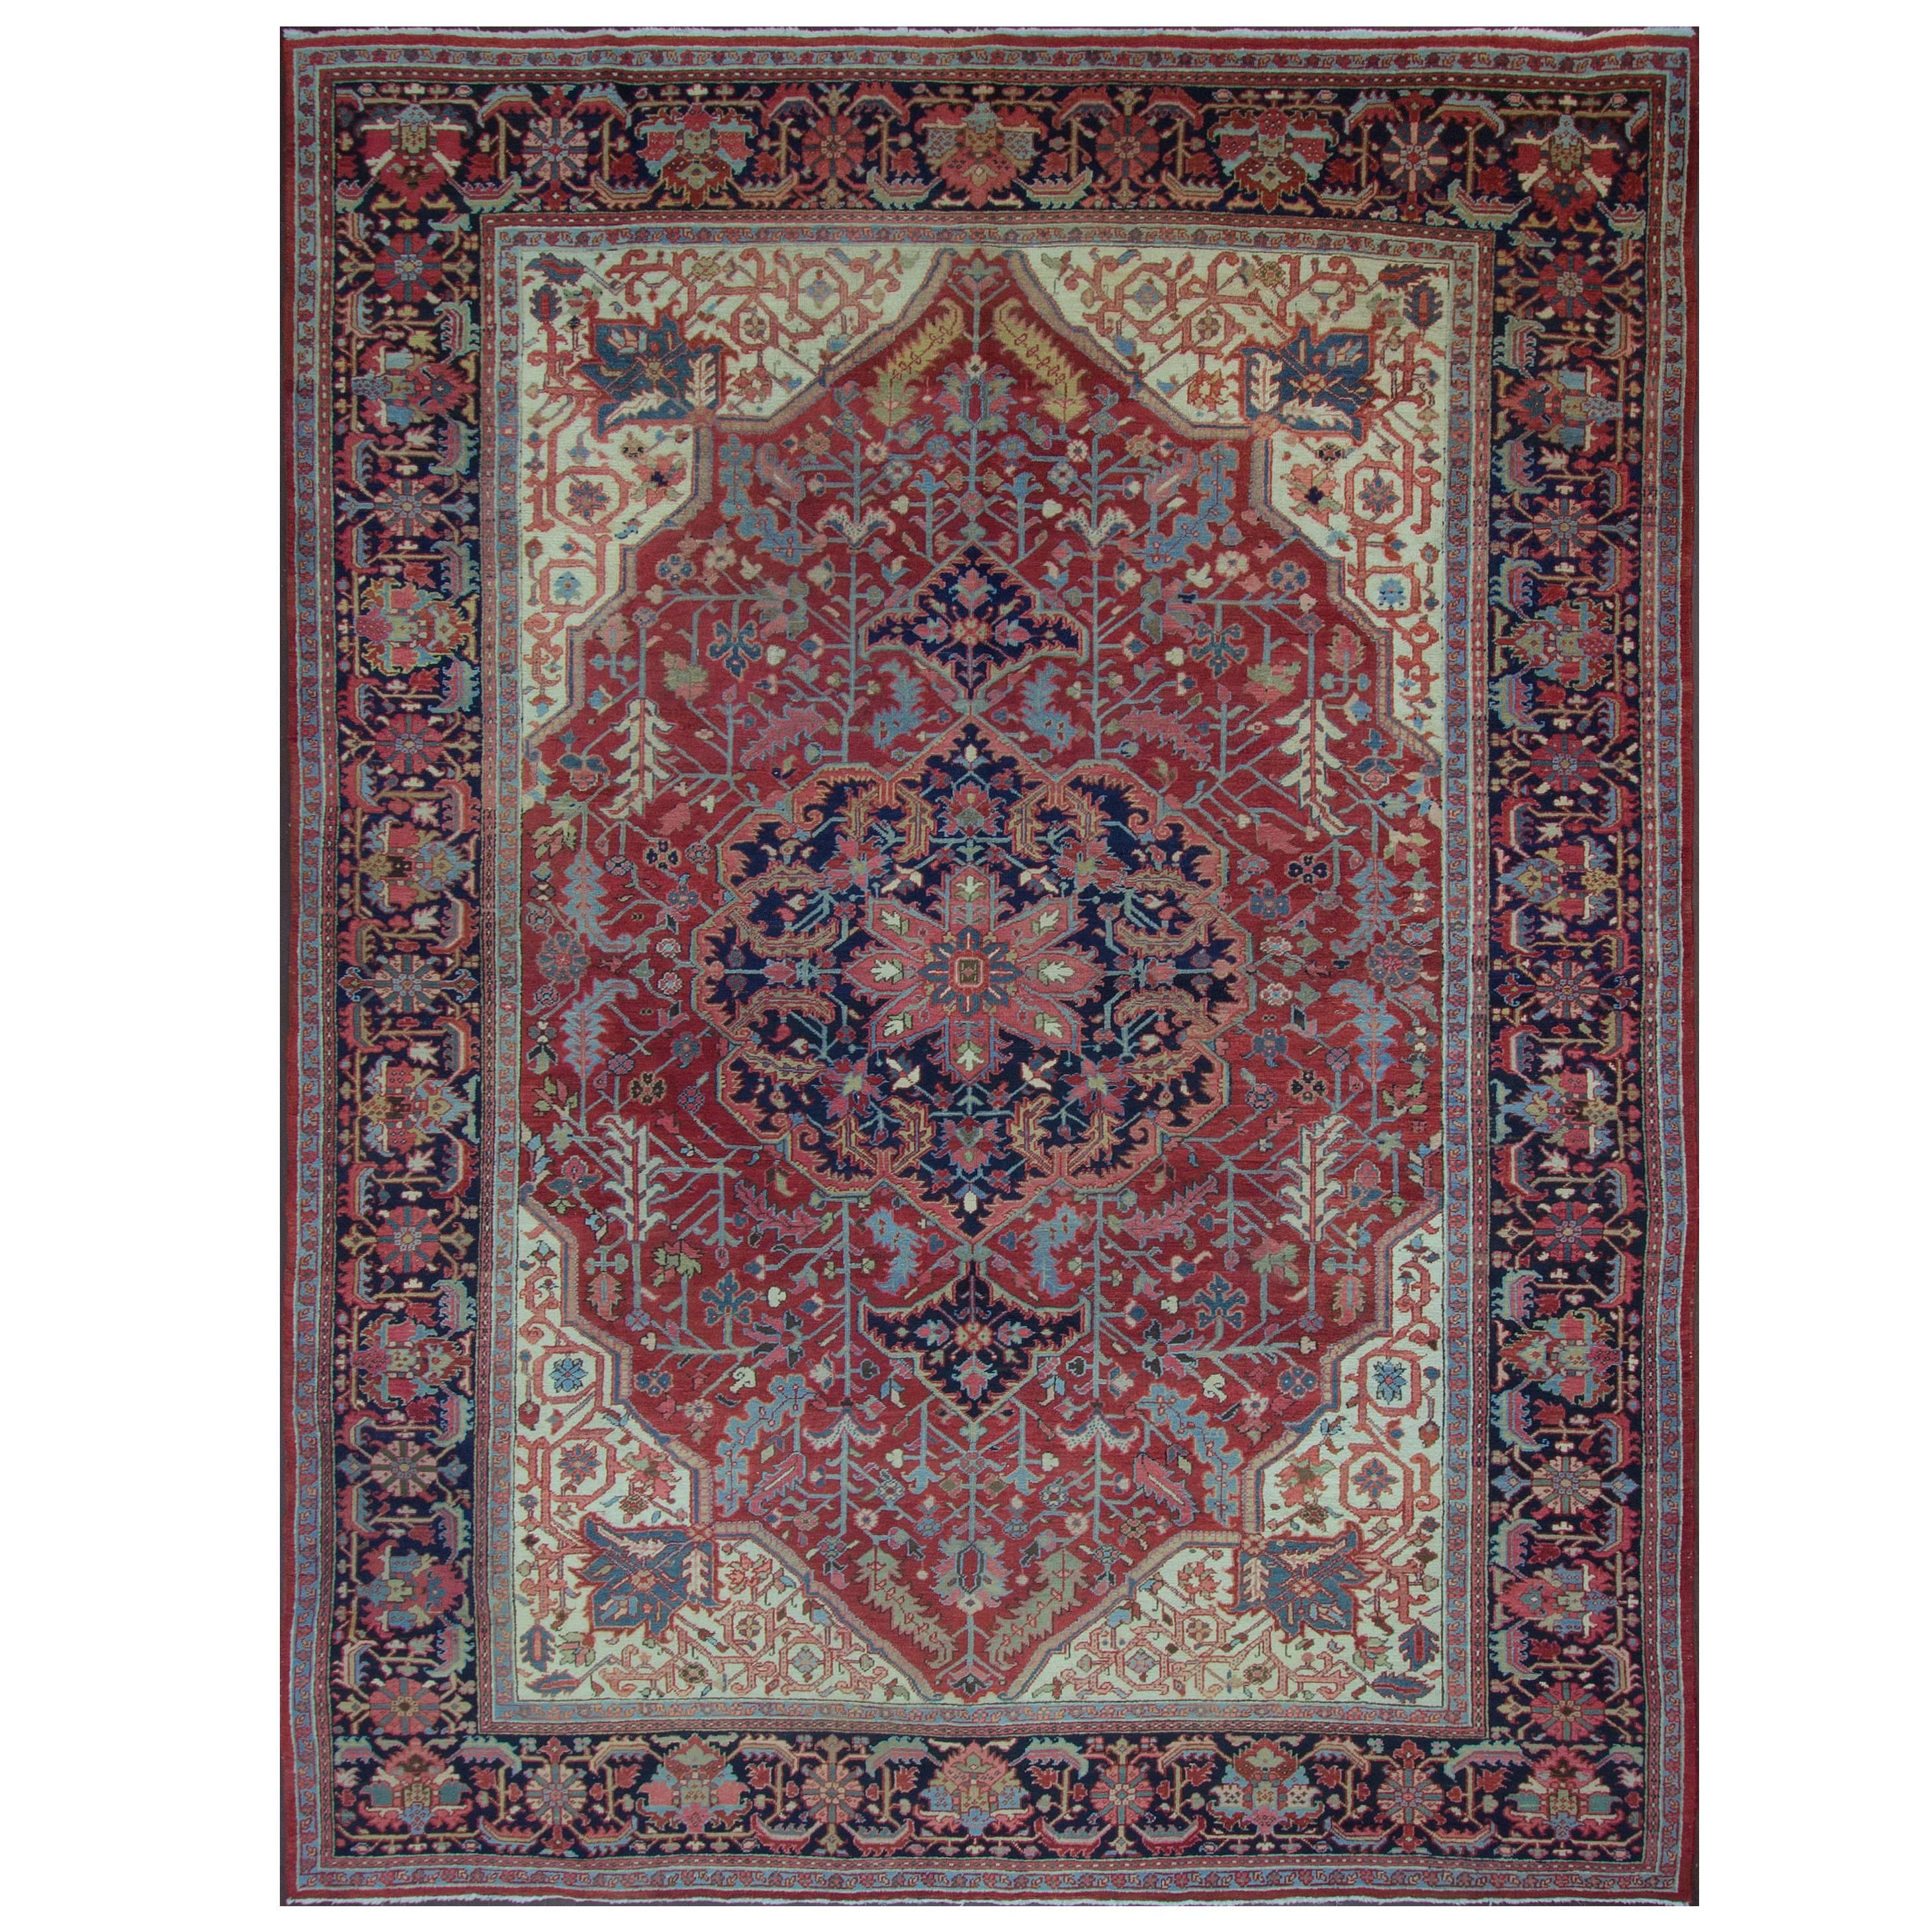 Antique Persian Heriz Carpet, 9'3" x 12'1"